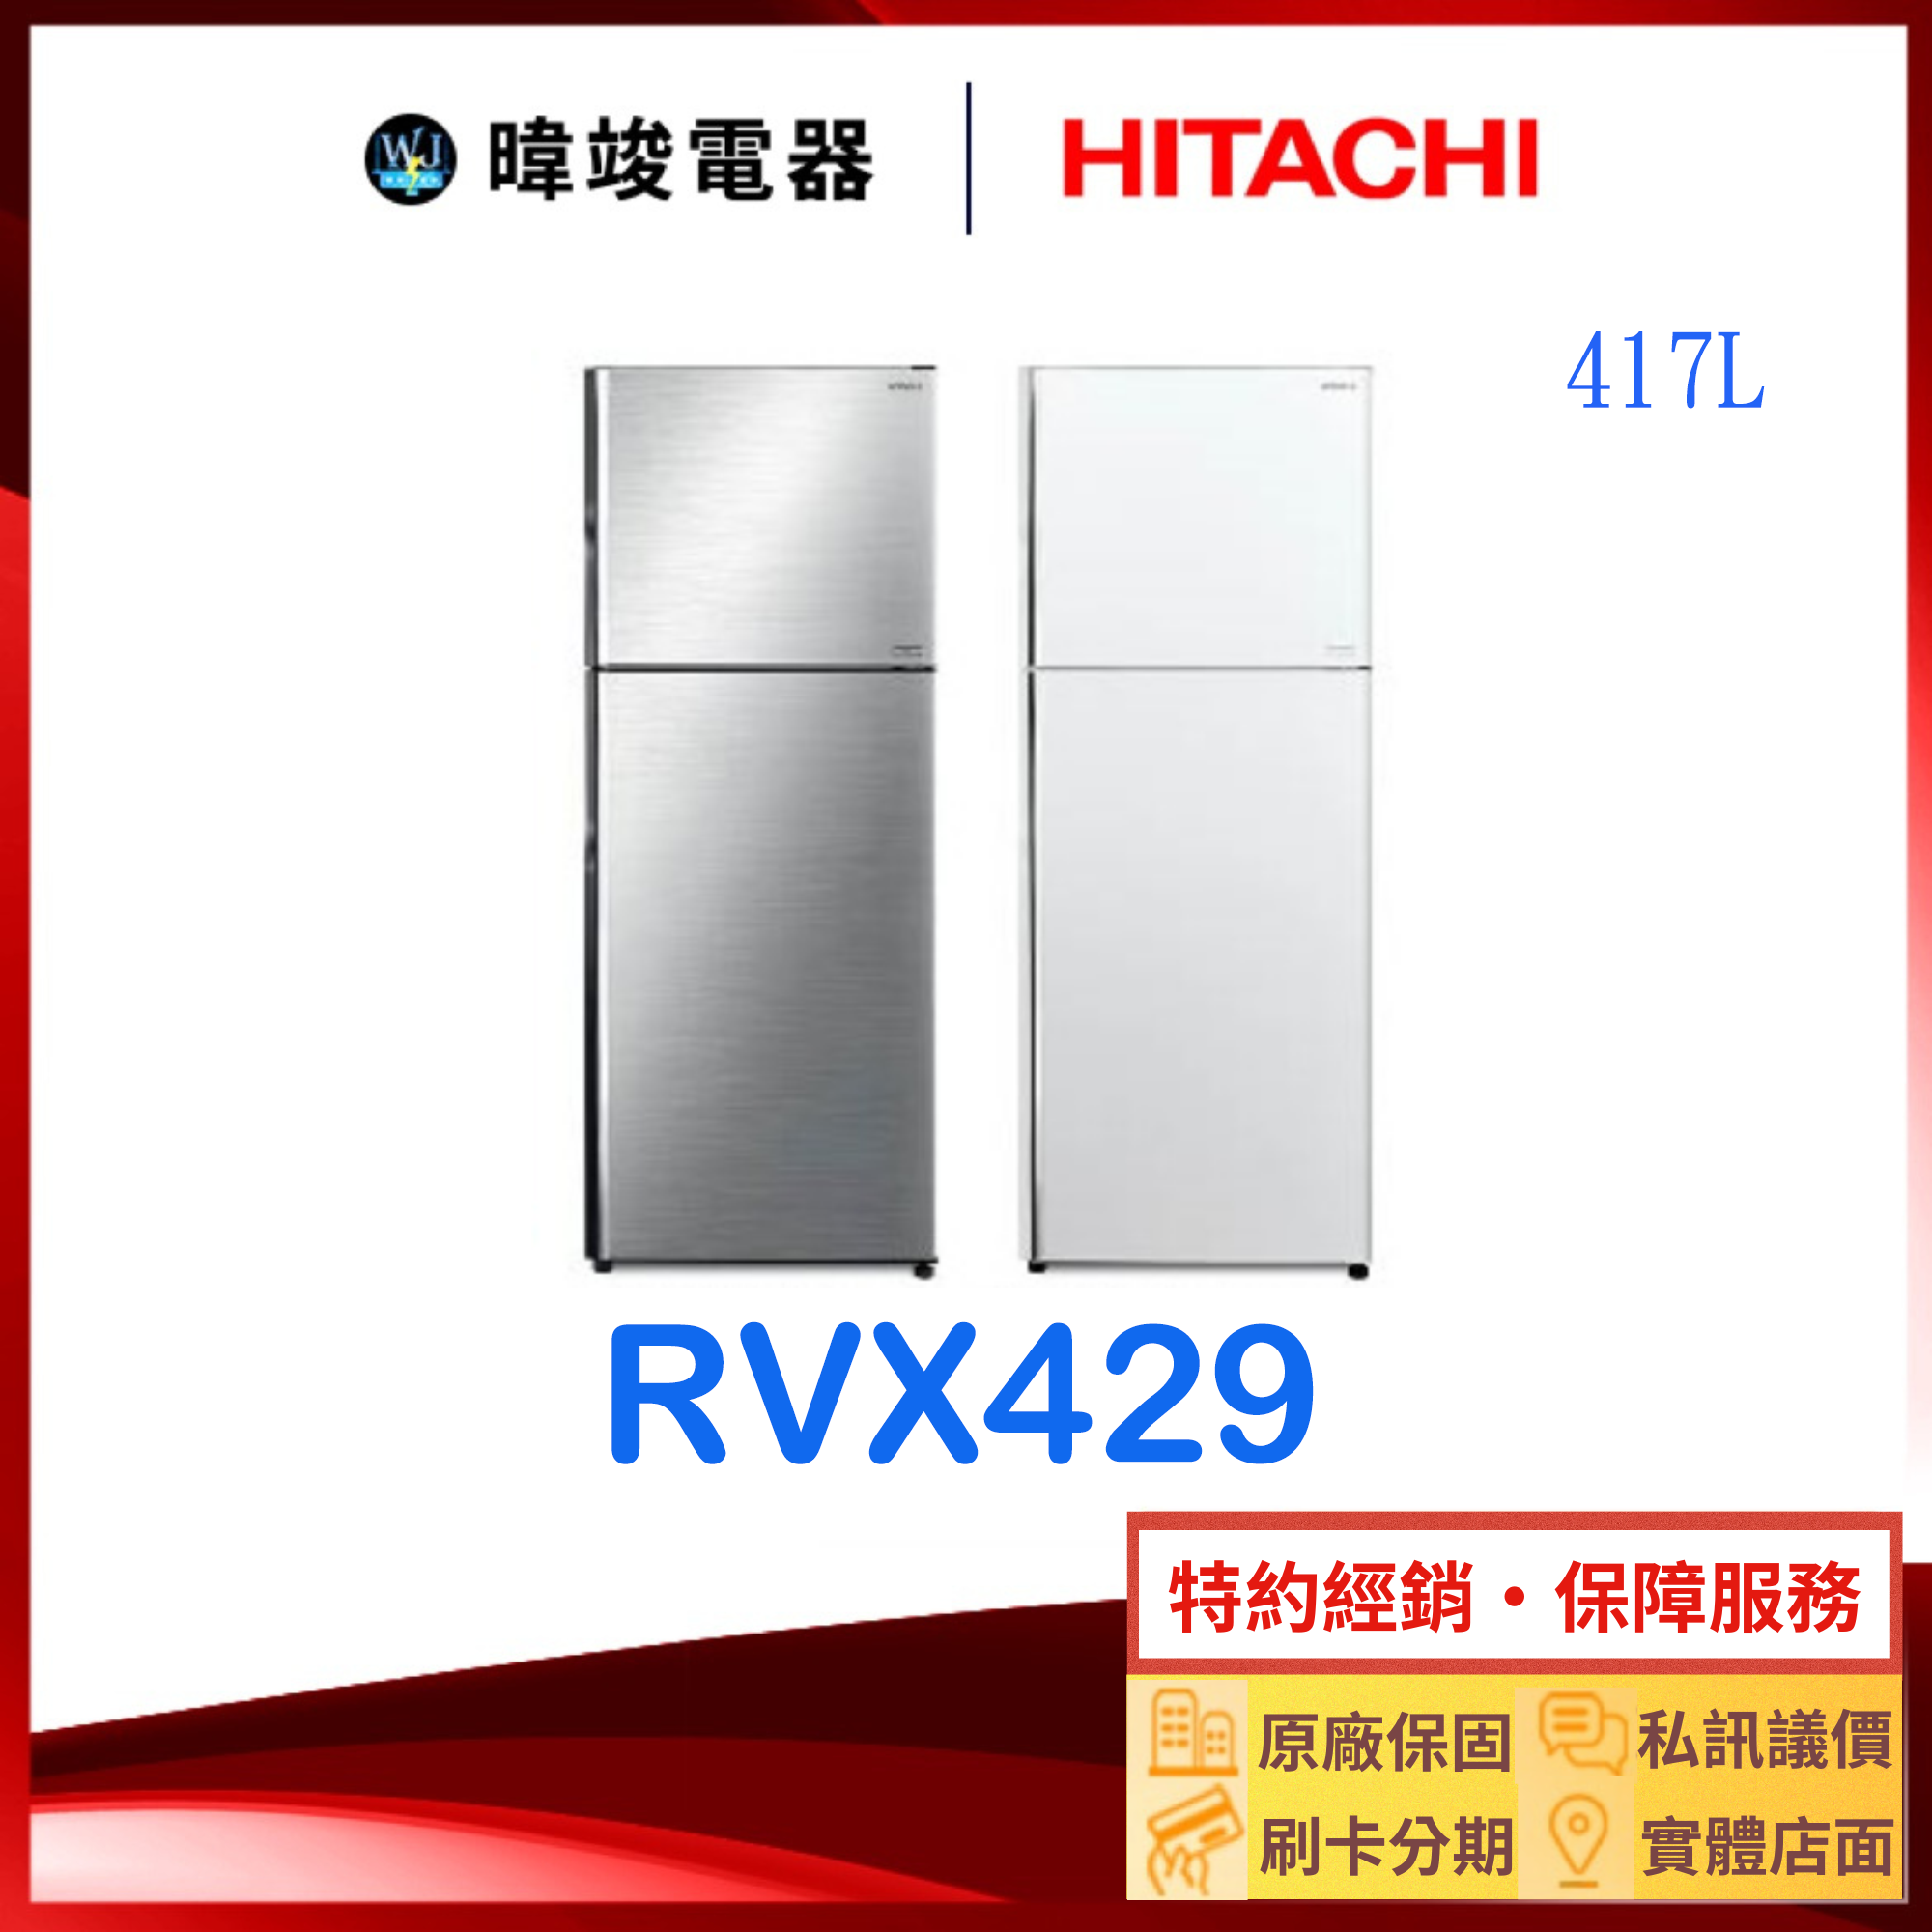 有現貨【獨家折扣碼】HITACHI 日立 R-VX429 雙門 冰箱 417公升 RVX429 變頻冰箱 取代RV409